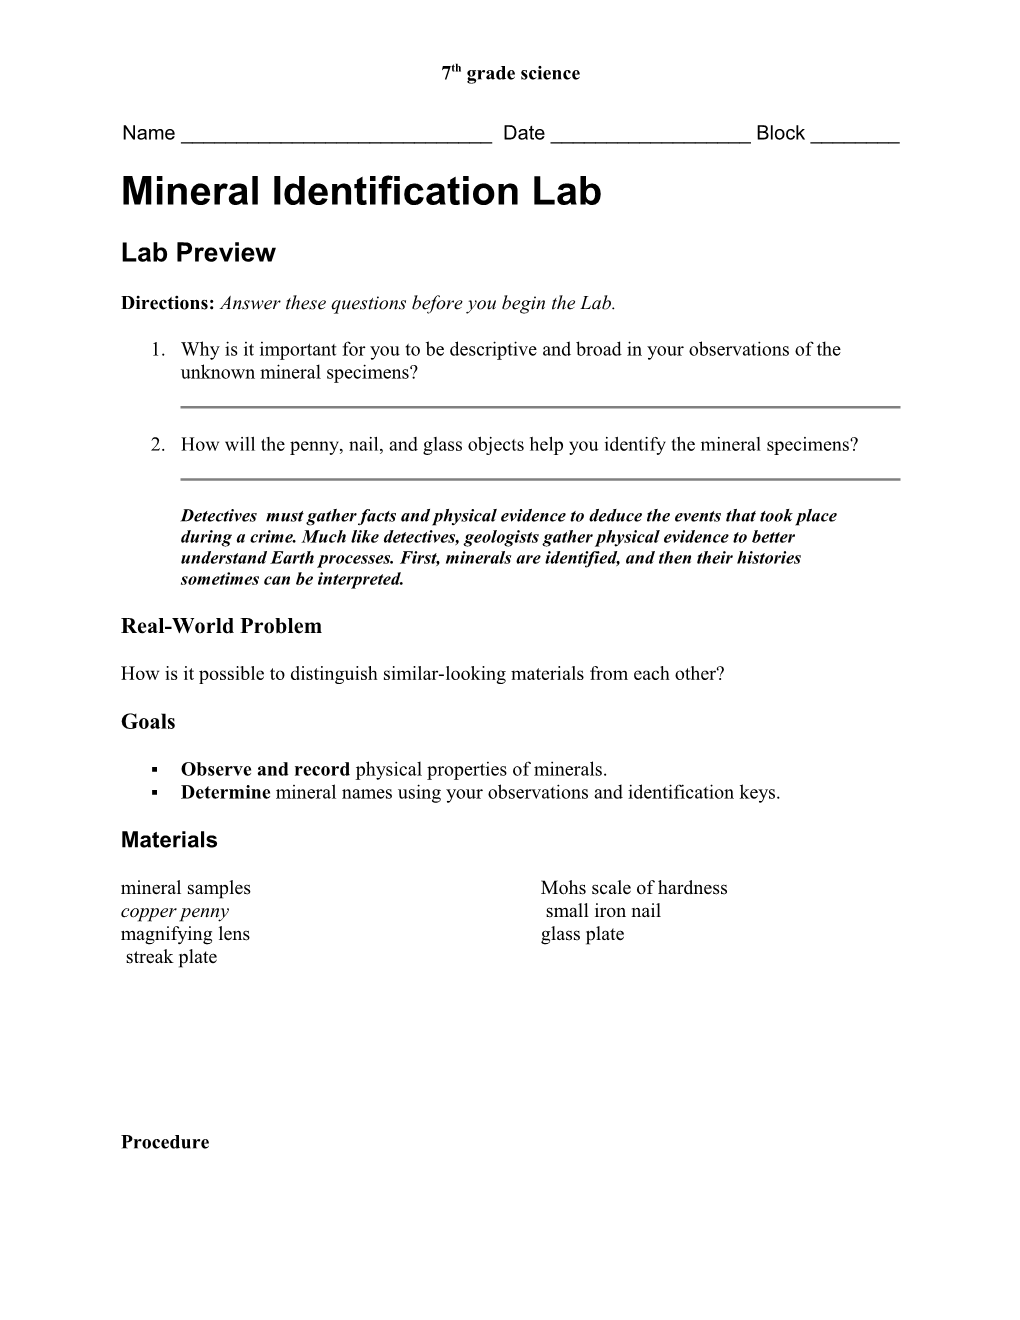 Mineral ID Lab